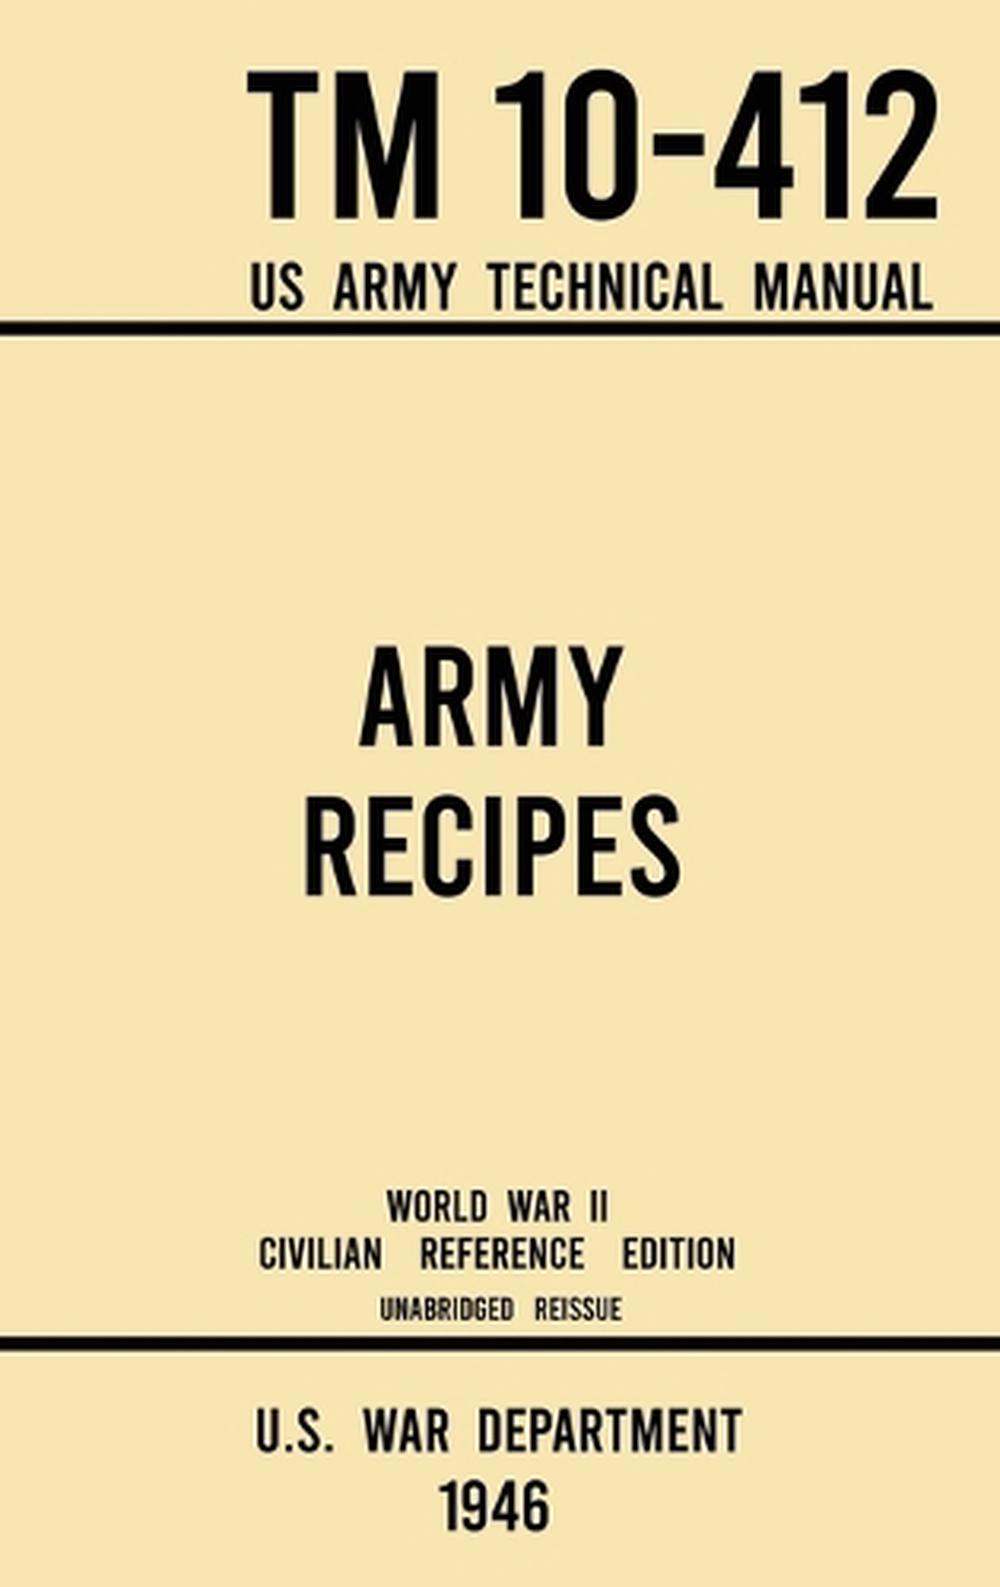 Army Recipes TM 10412 US Army Technical Manual (1946 World War II